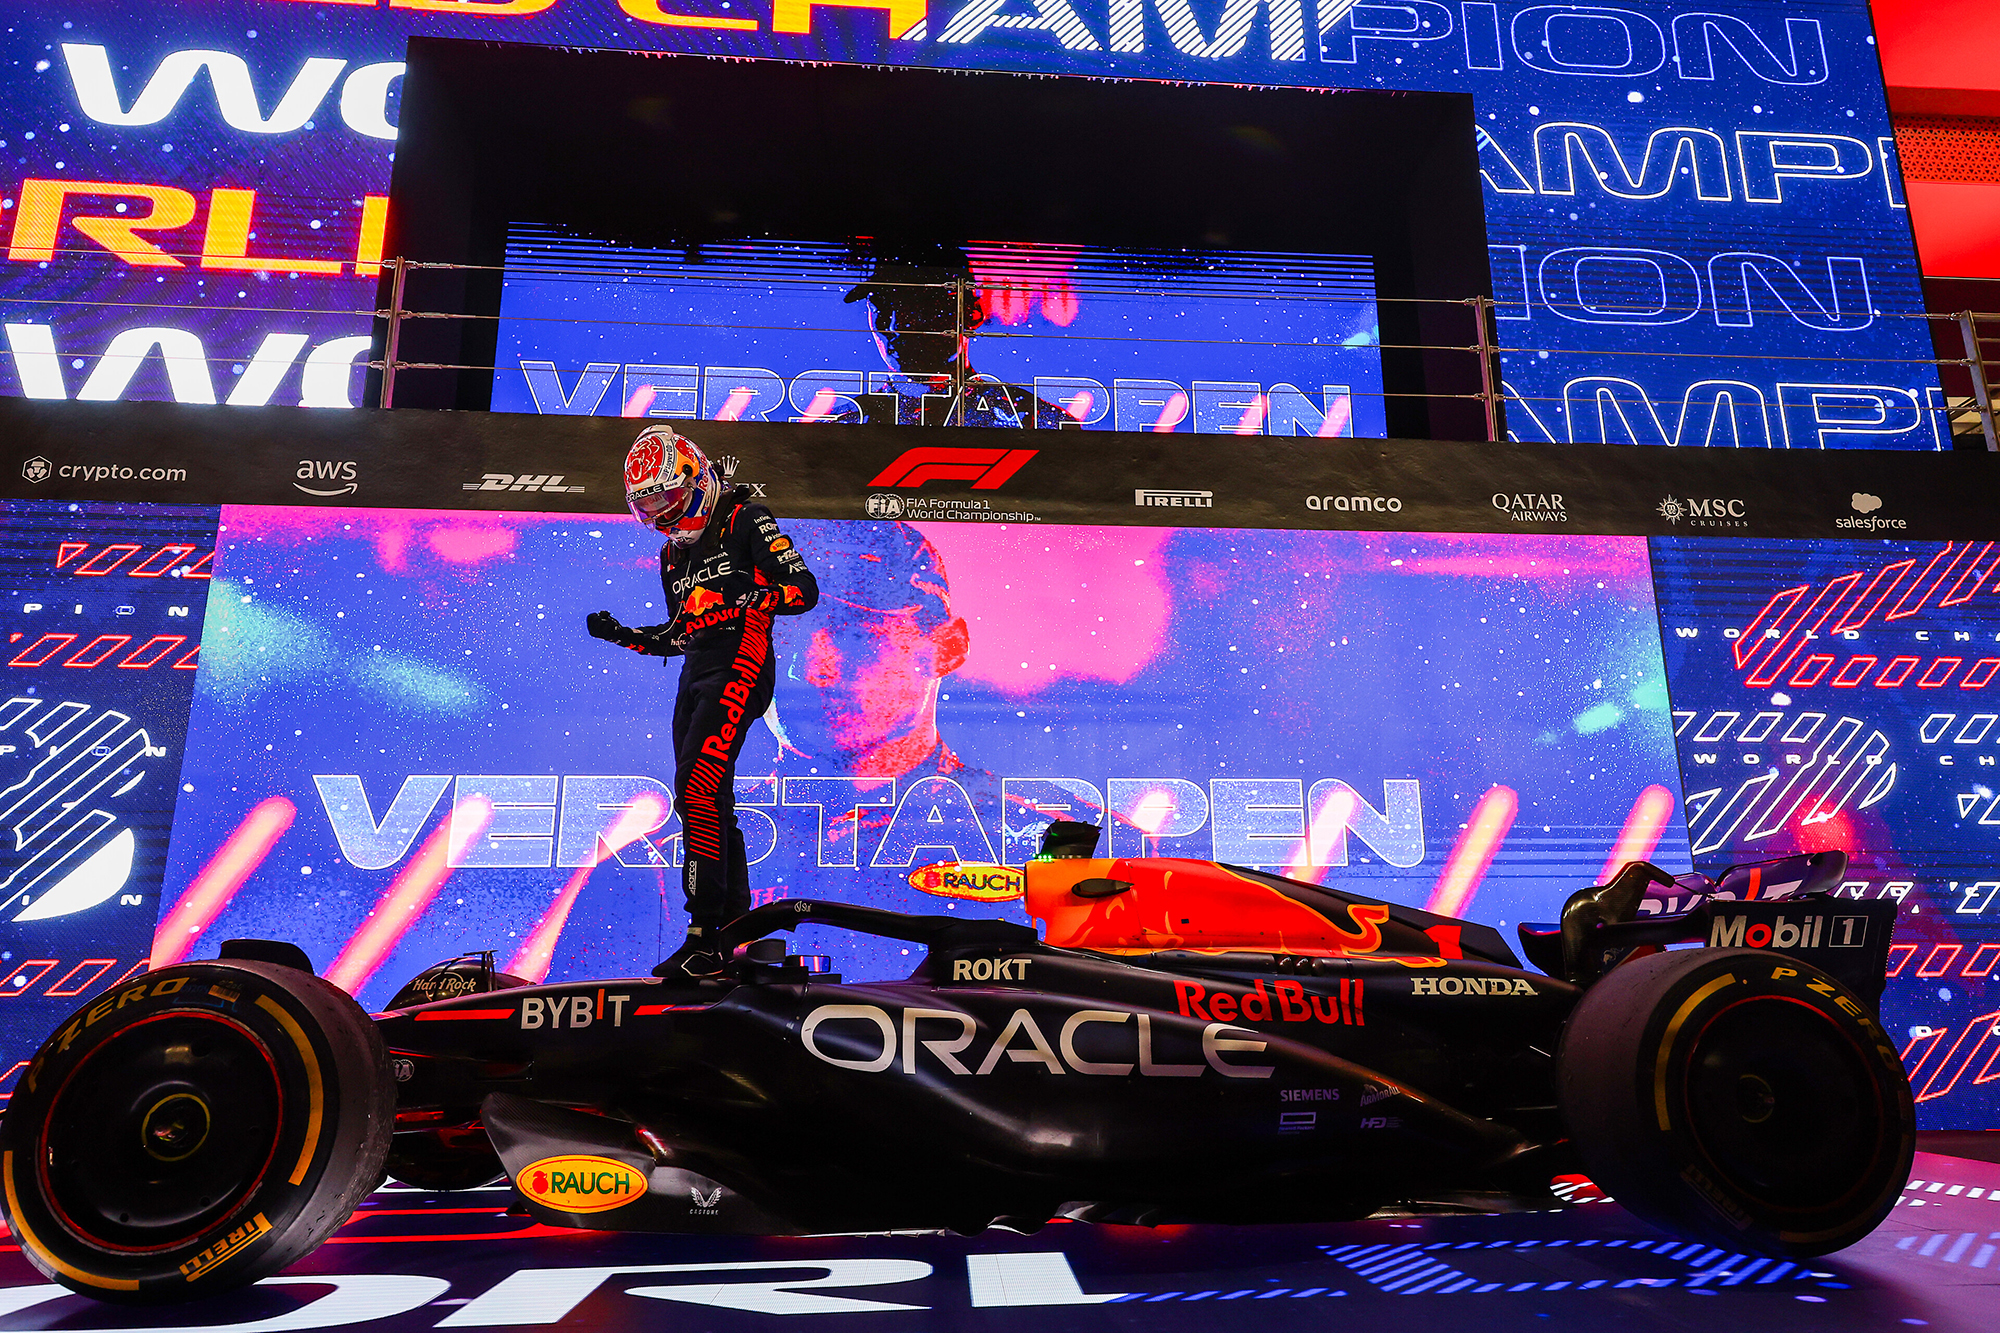 Le champion du monde de Formule 1 Max Verstappen célèbre sa victoire sur le museau de sa Red Bull RB19, devant des écrans géants célébrant son titre de champion du monde